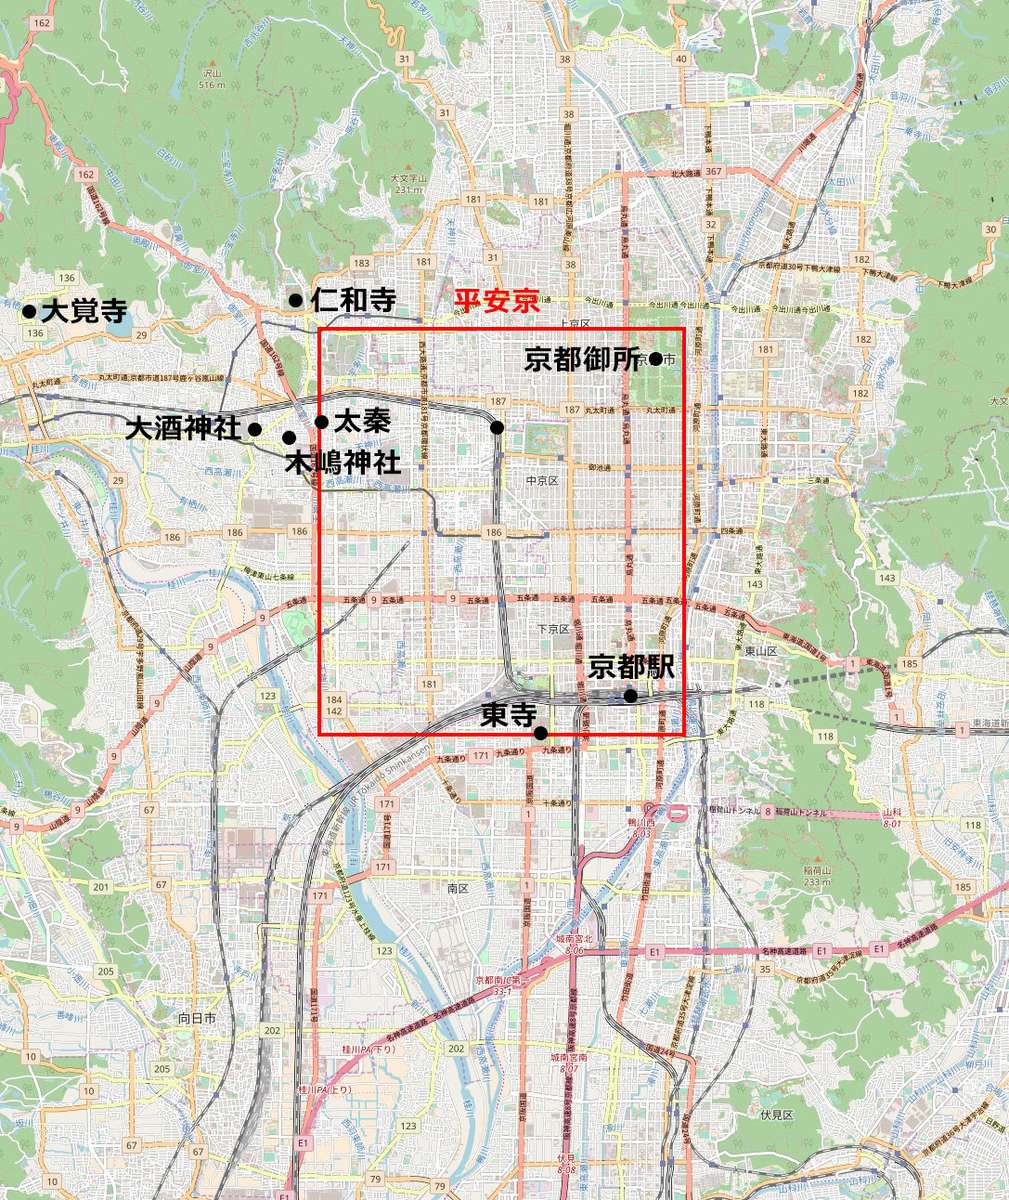 秦氏の拠点となる平安京に建立された古代の神社 (赤枠は平安京の想定位置) 引用元: Wikipedia